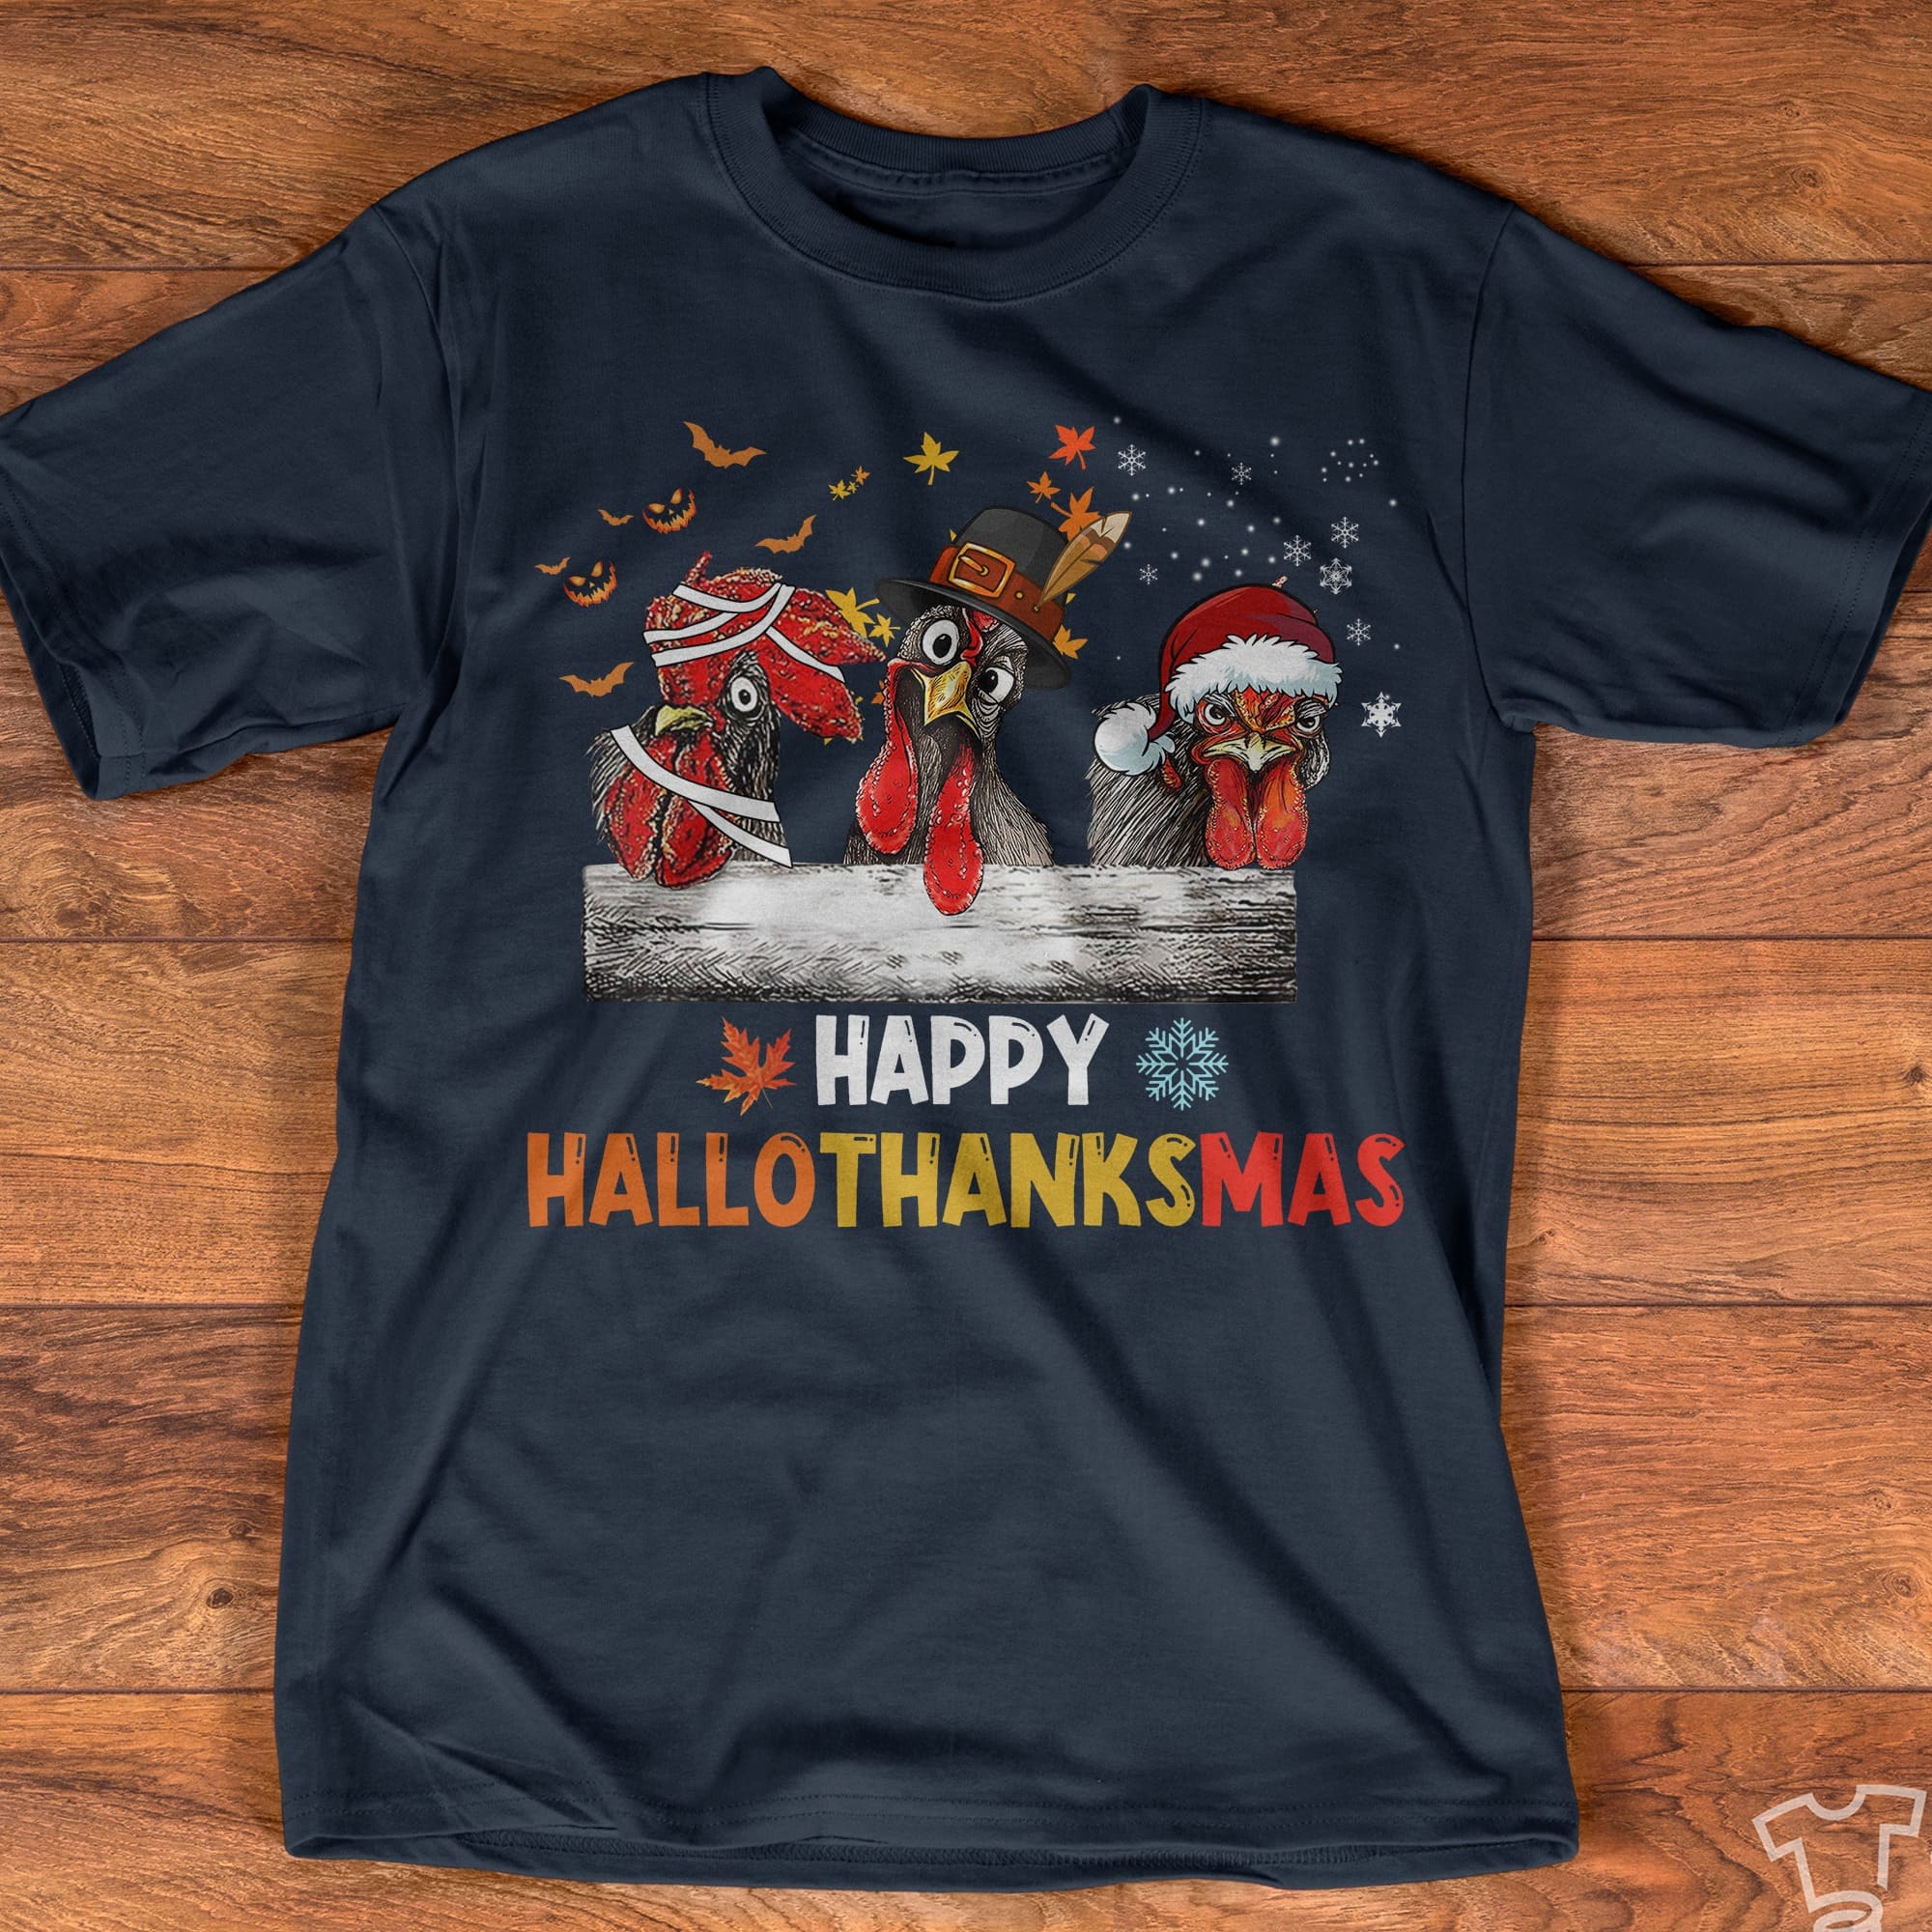 Happy Hallothanksmas - Grumpy chicken graphic T-shirt, Chicken wearing Santa hat